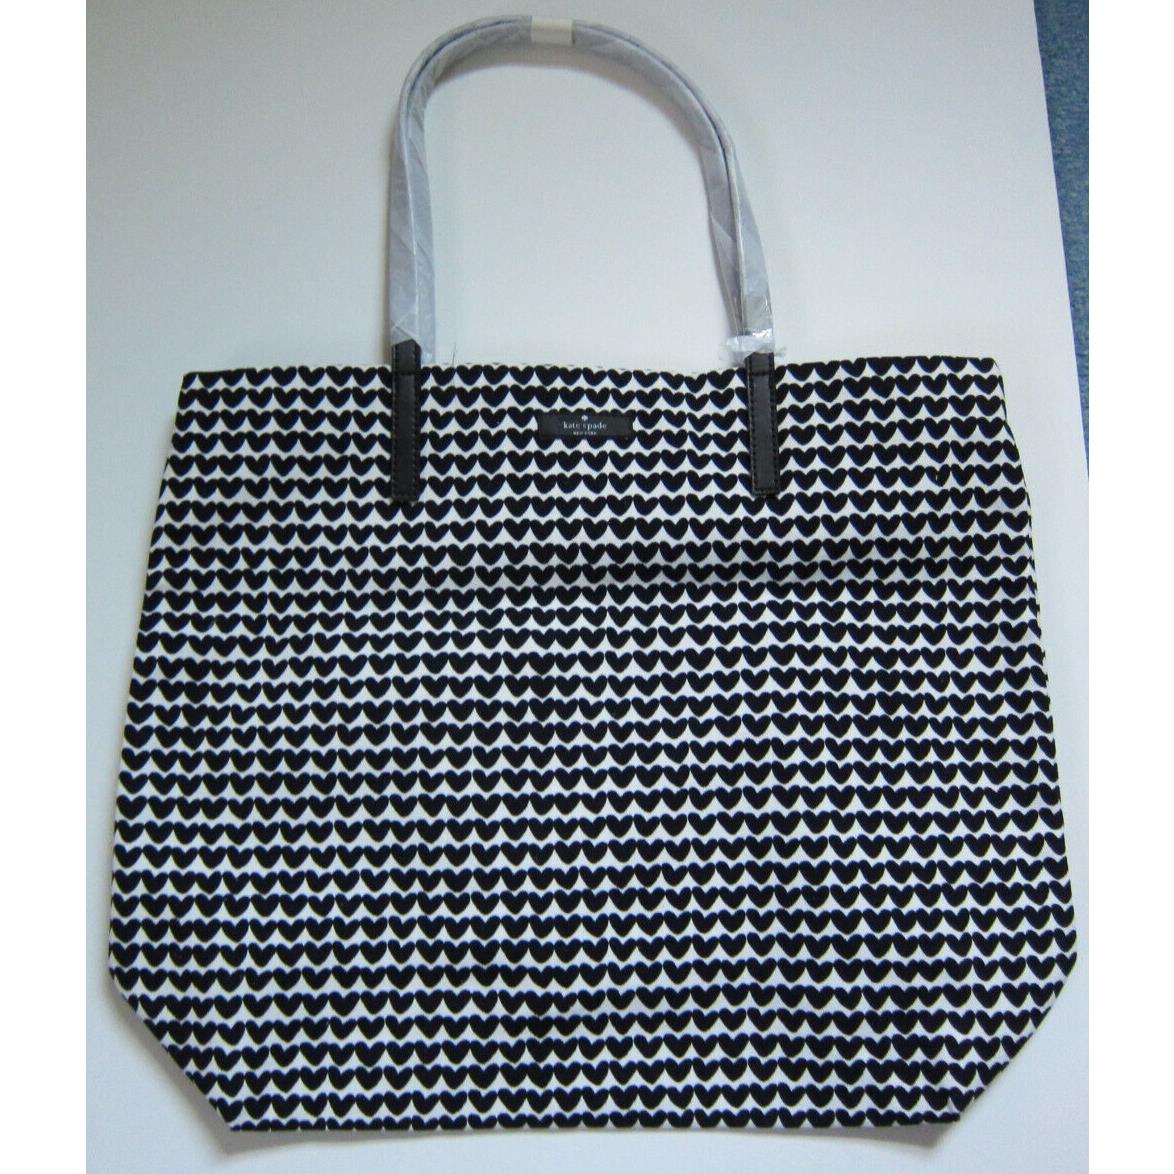 Kate Spade New York Bon Shopper Shopping Tote Bag - Black/white